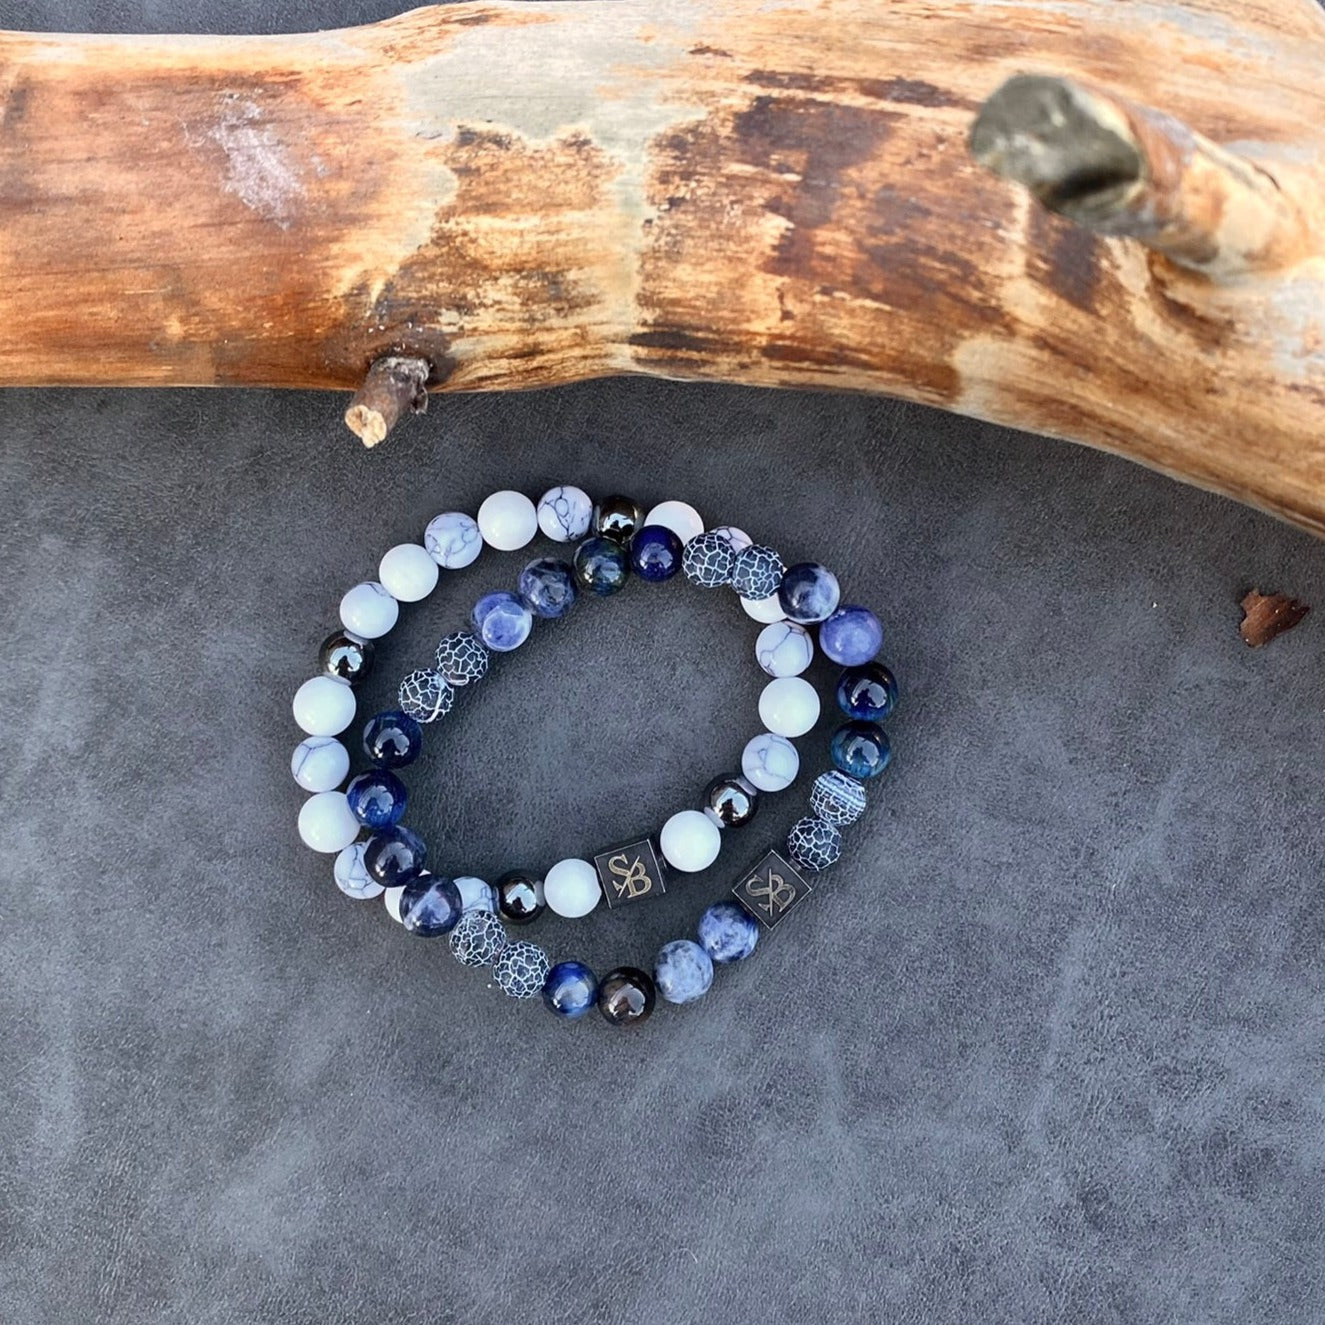 Twee Oceaan | Mixed Stones (8 mm) op de natuur geïnspireerde armbanden met blauwe en zwarte edelsteenkralen op een boomstam van Stoney Bracelets.